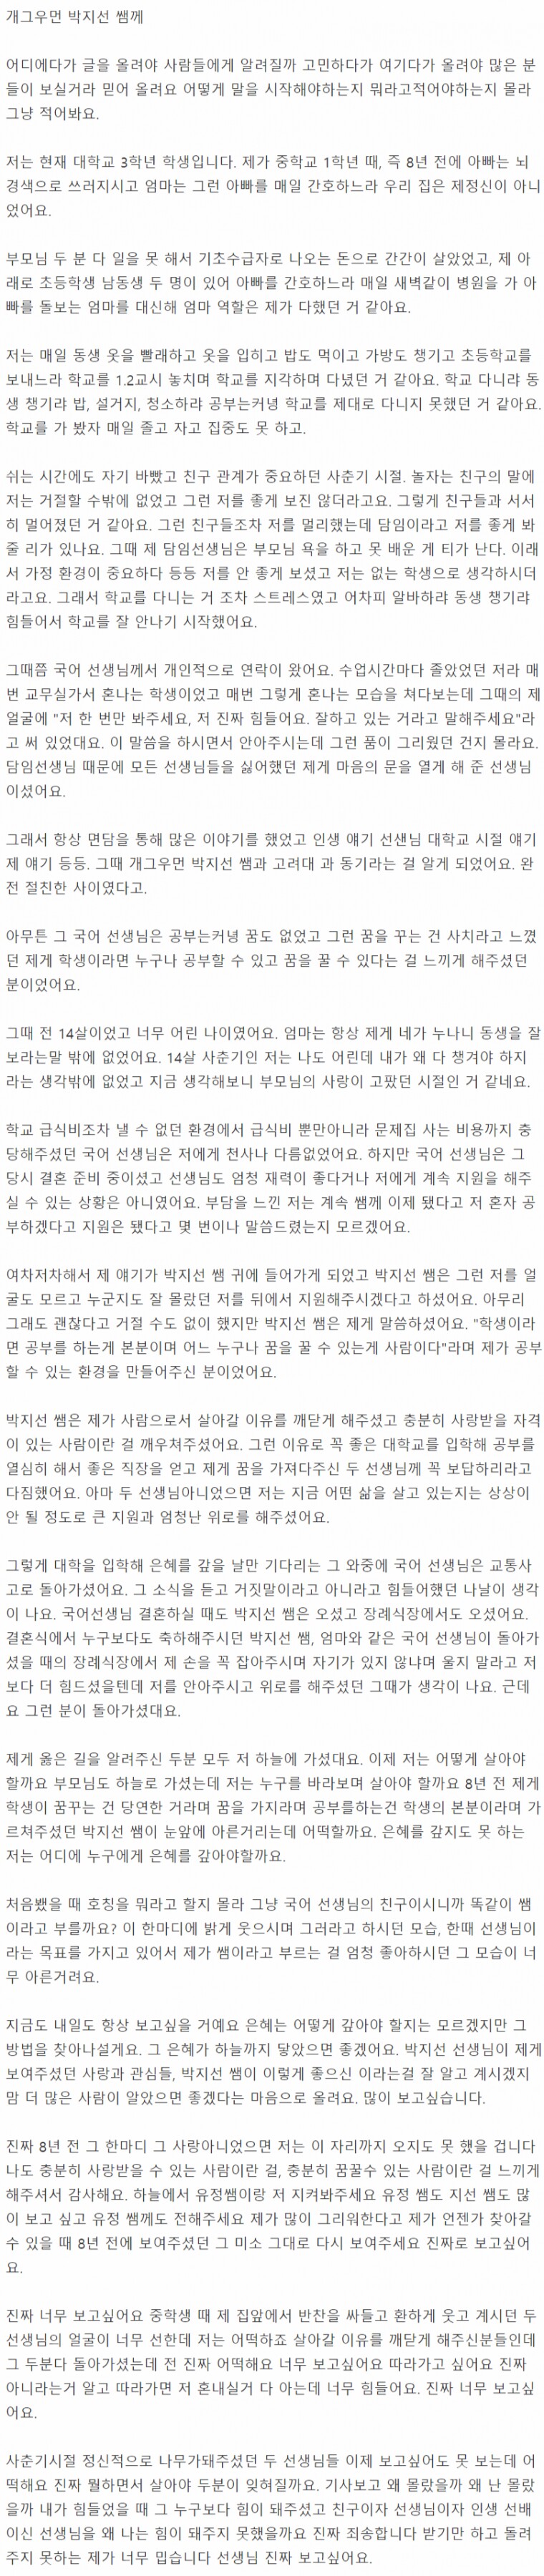 박지선에게 8년간 도움받은 학생이 쓴 글.